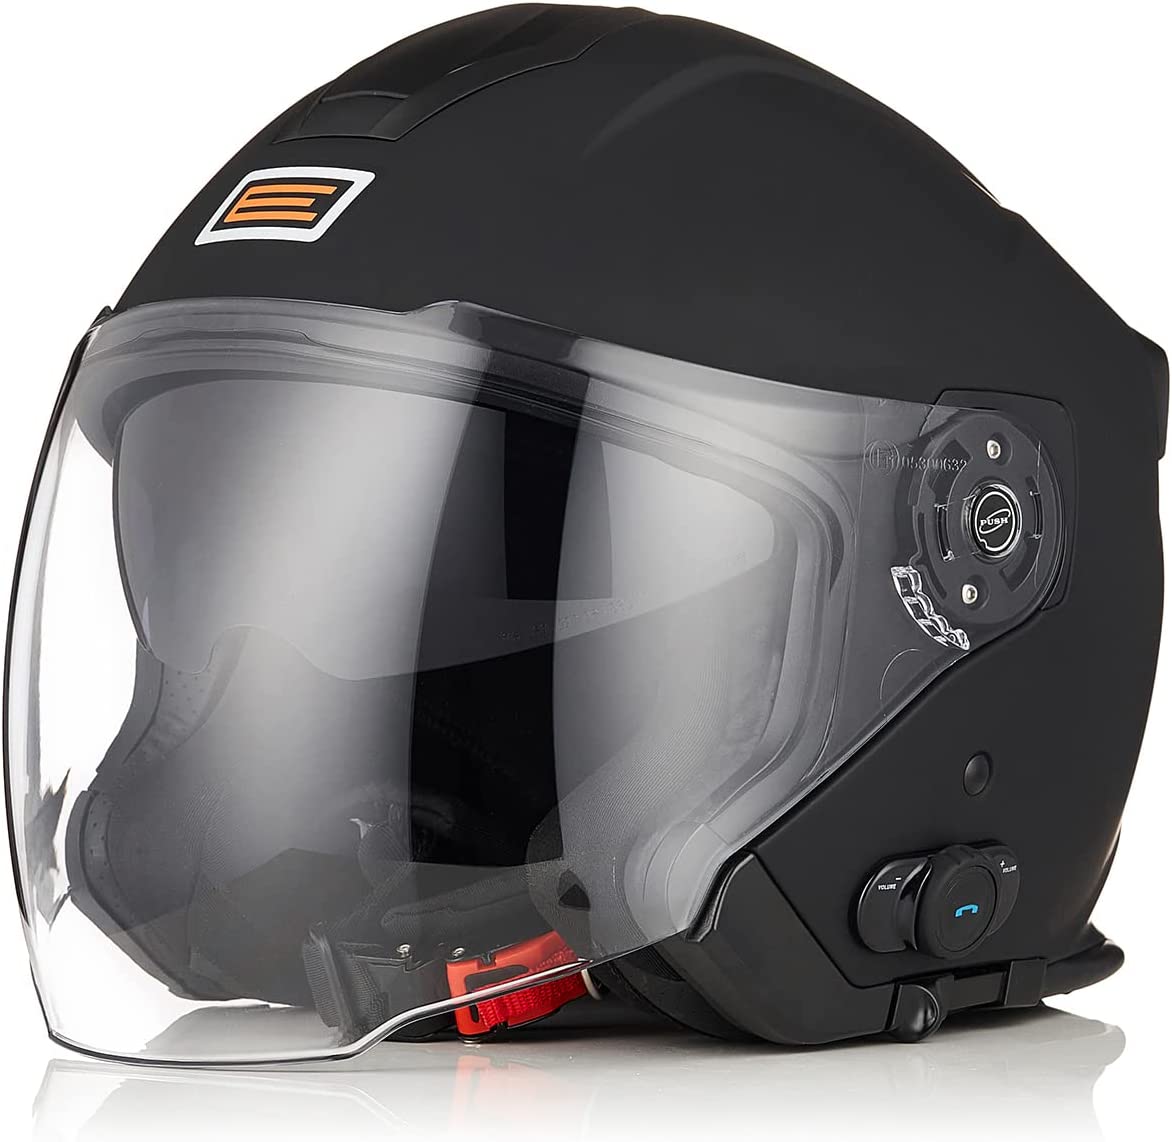 ORIGINE Motorradhelm Jethelm Roller Helm Bluetooth ECE Mit Doppel Visier Test